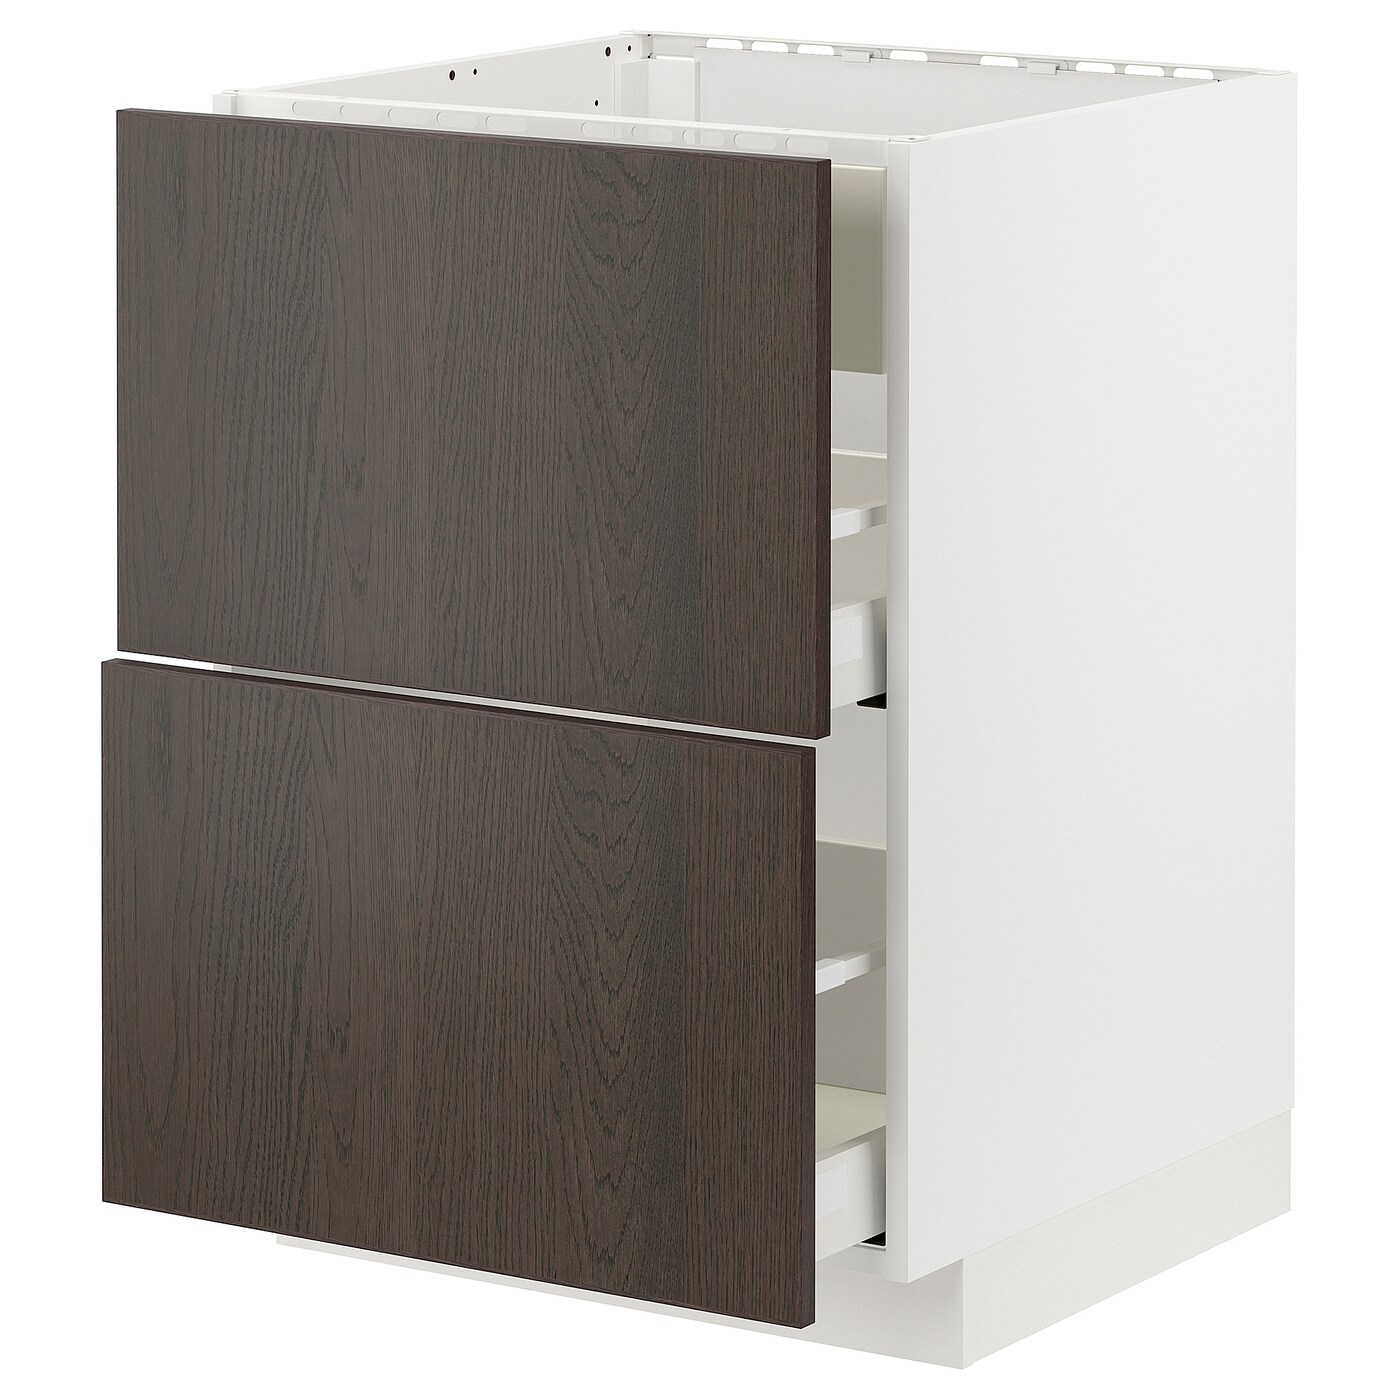 Напольный кухонный шкаф  - IKEA METOD MAXIMERA, 88x62x60см, темно-коричневый/белый, МЕТОД МАКСИМЕРА ИКЕА